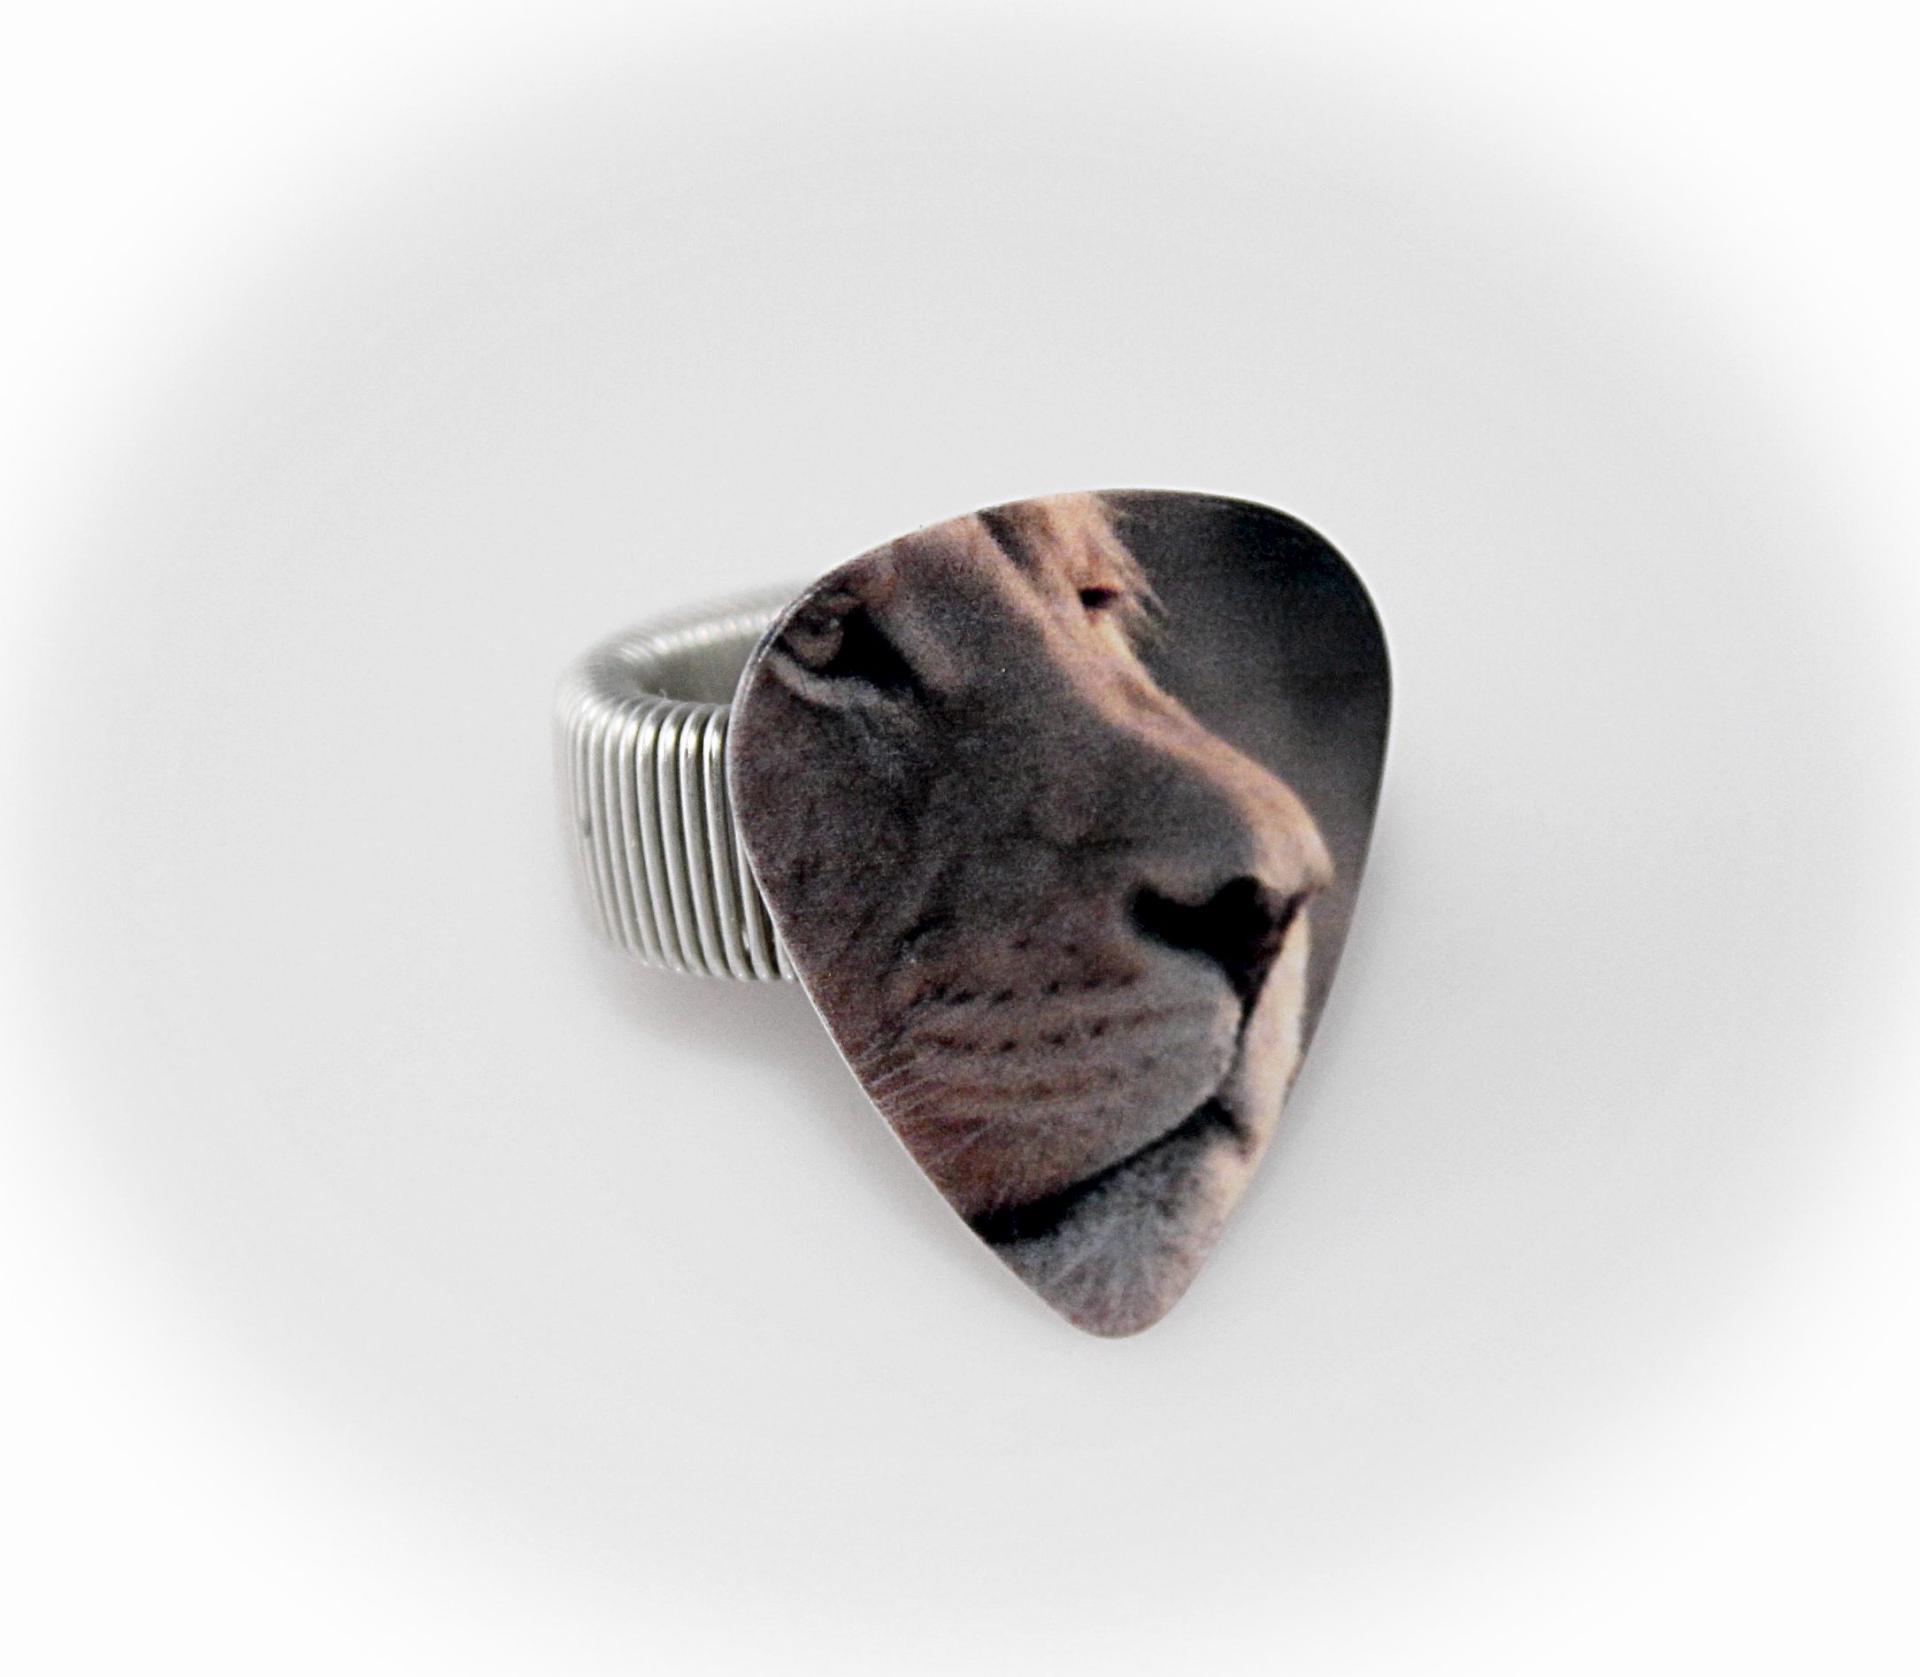 Guitar Pick Adjustable Ring - Lion or Tiger Design!